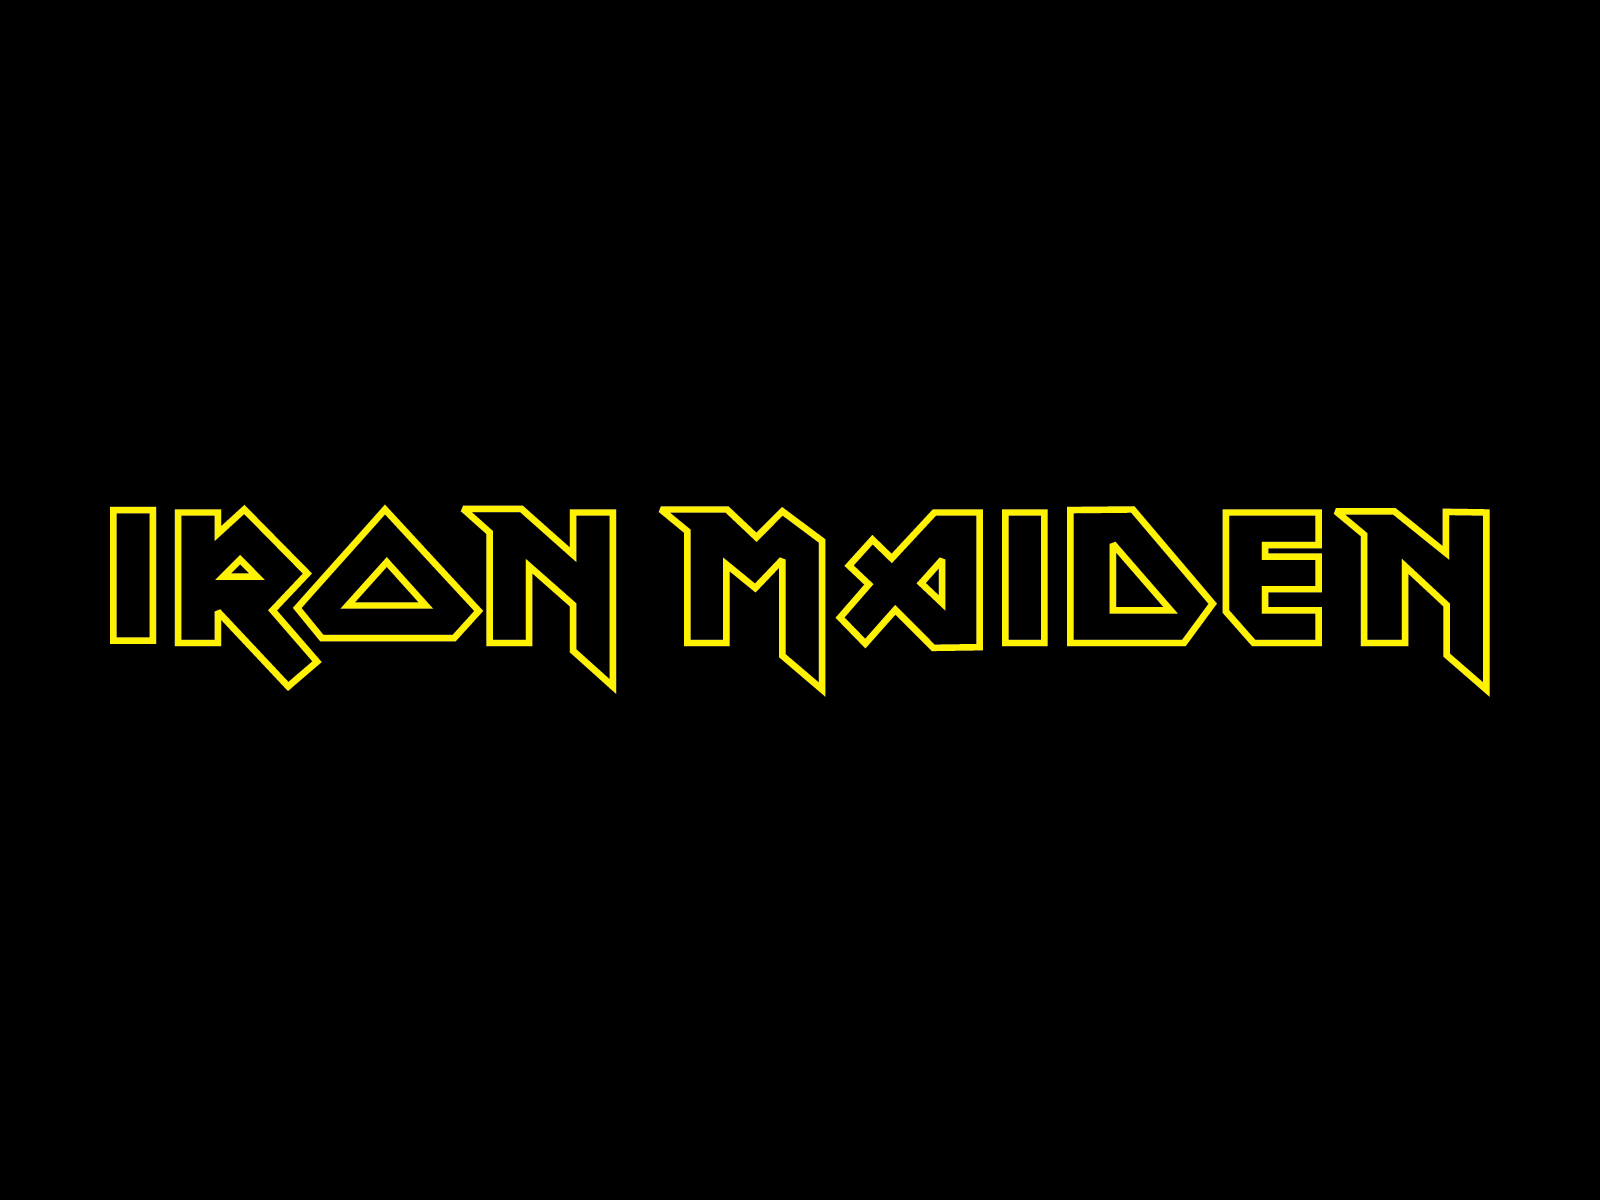 iron maiden, hard rock, music, heavy metal